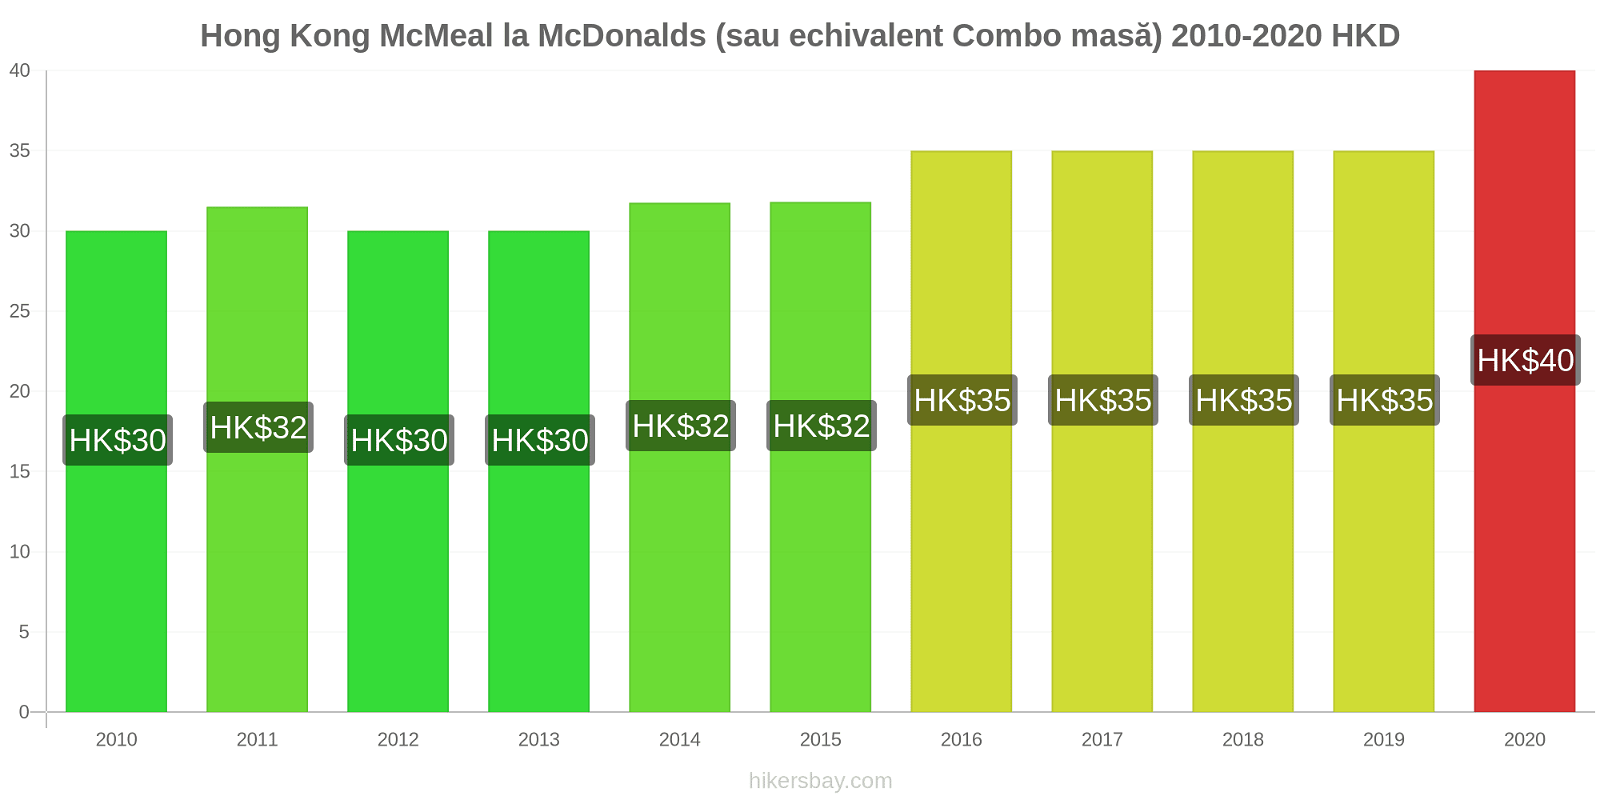 Hong Kong modificări de preț McMeal la McDonalds (sau echivalent Combo masă) hikersbay.com